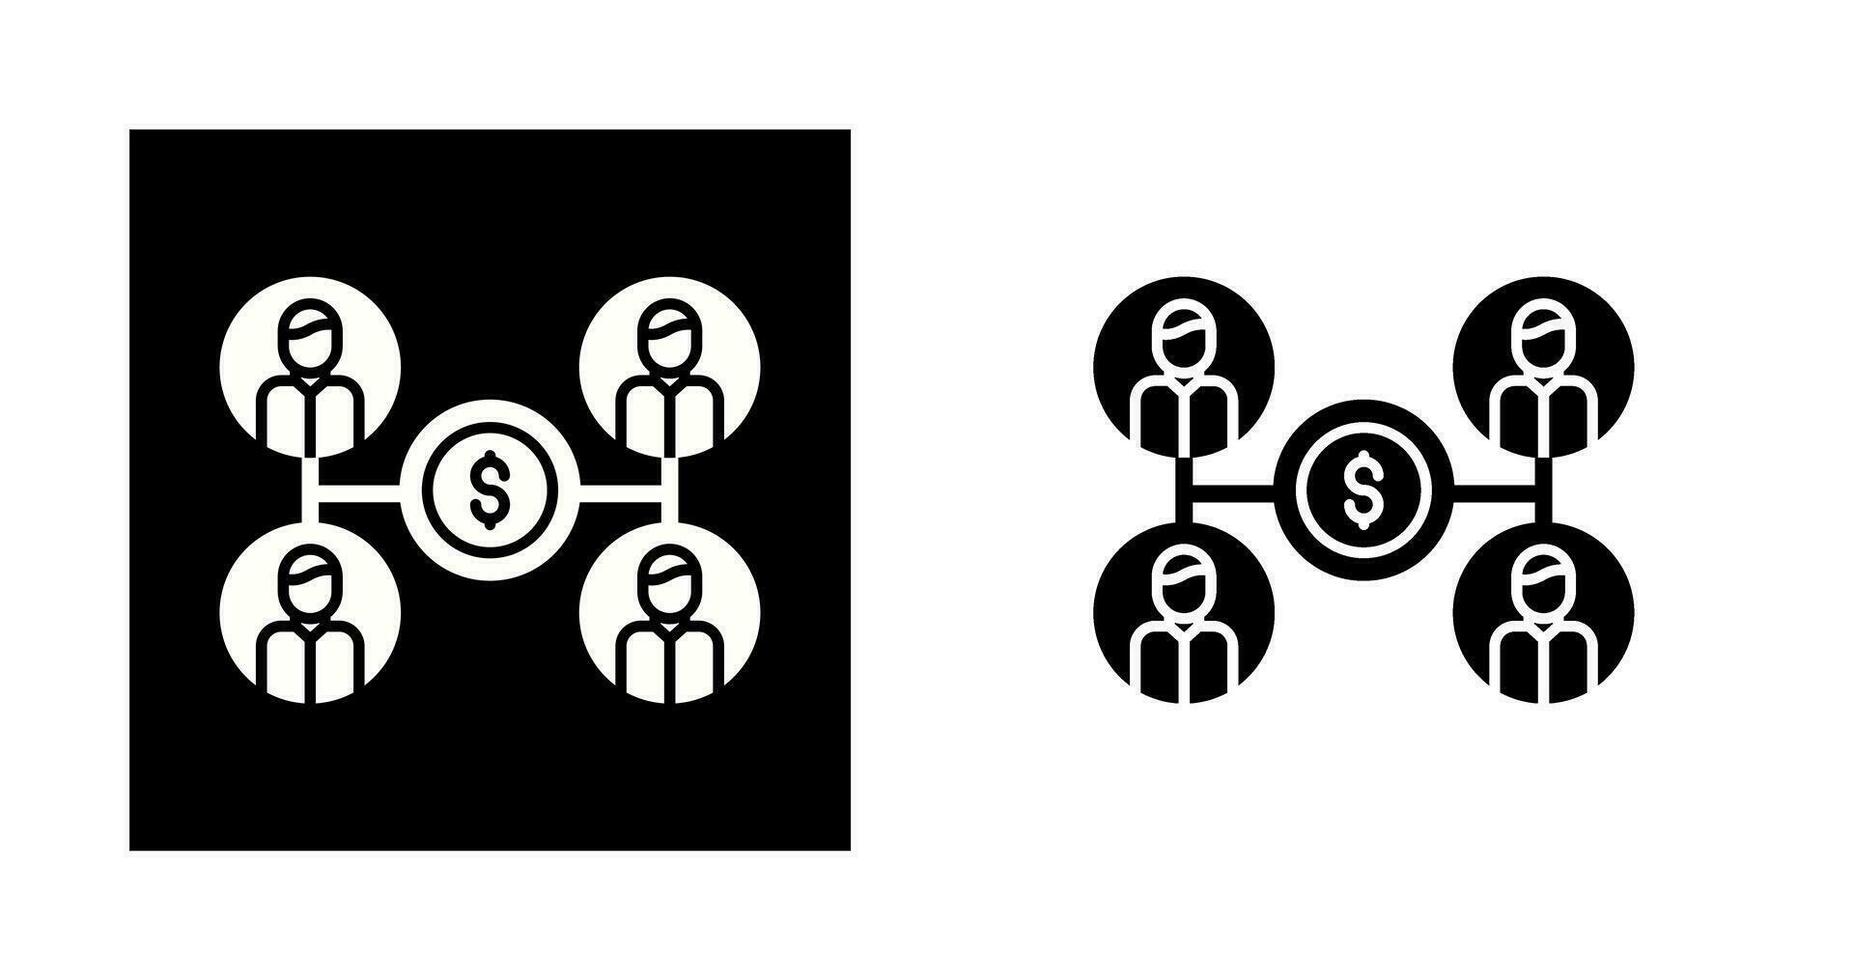 icône de vecteur de financement participatif